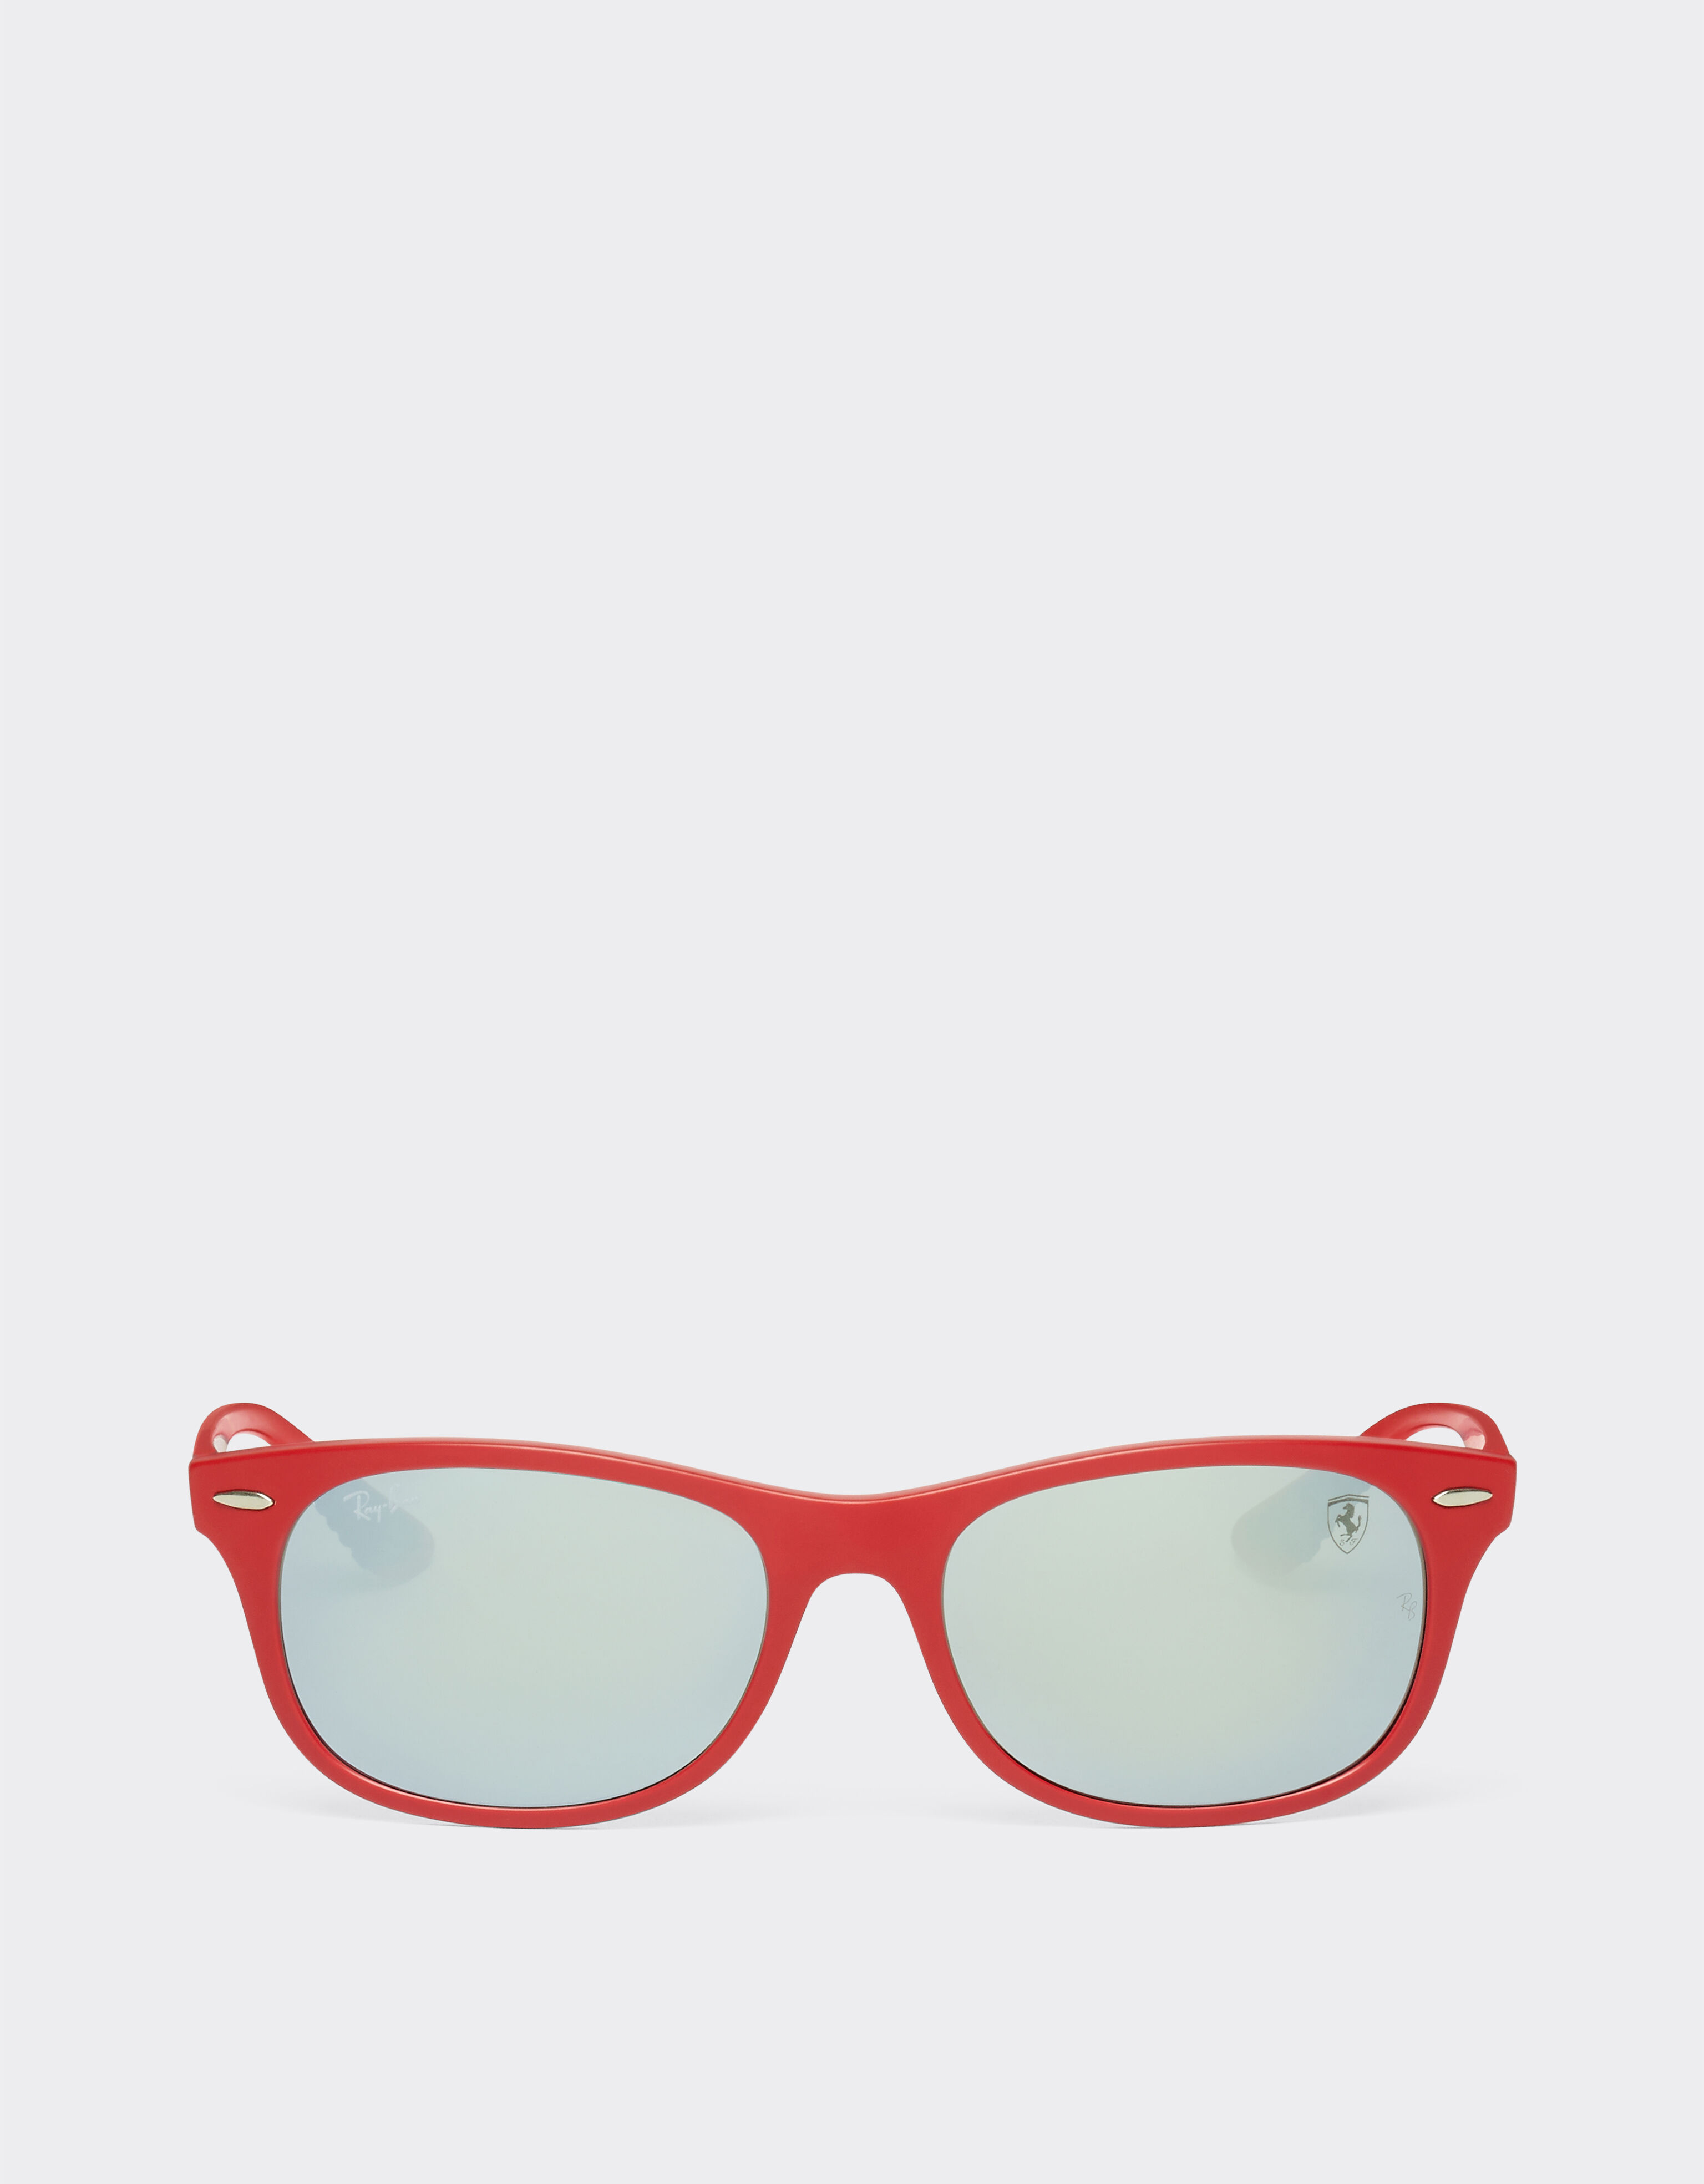 Ferrari Ray-Ban for Scuderia Ferrari 0RB4607M matt red sunglasses with silver mirror green lenses Rosso Corsa F1135f